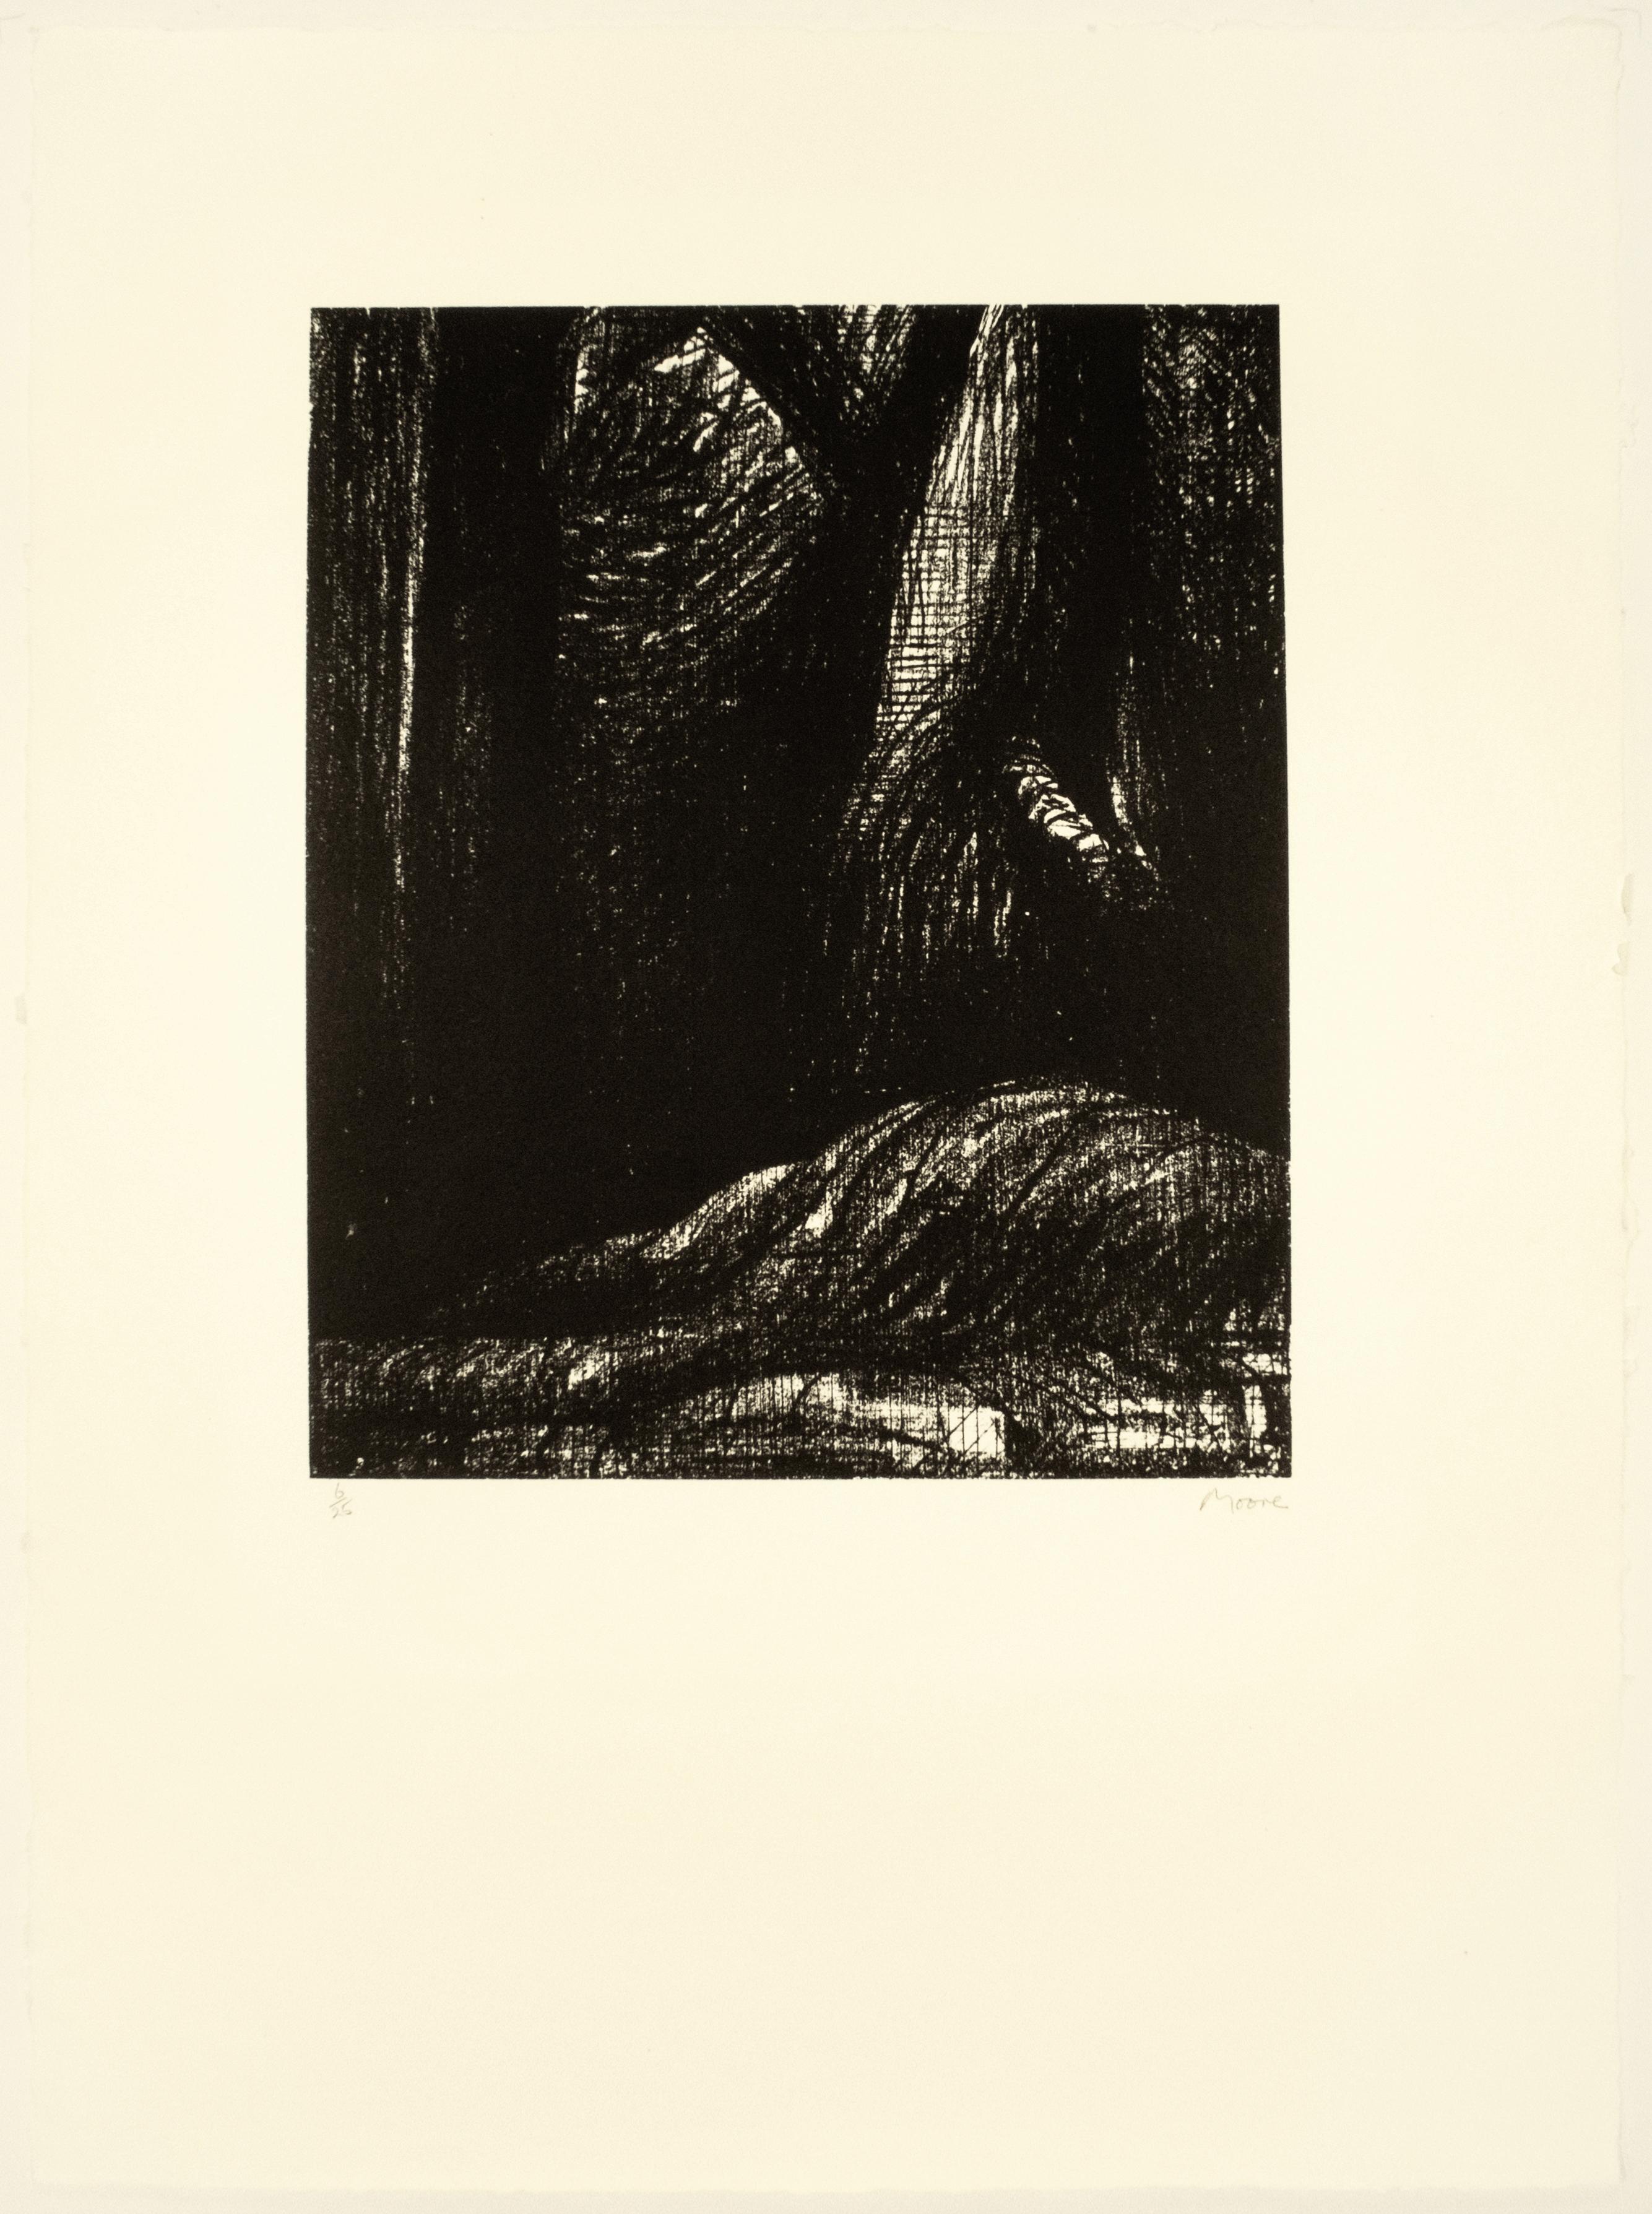 The Cavern: abstrakte schwarze Zeichnung, die auf der Poesie von Auden und der Landschaft von Yorkshire basiert – Print von Henry Moore